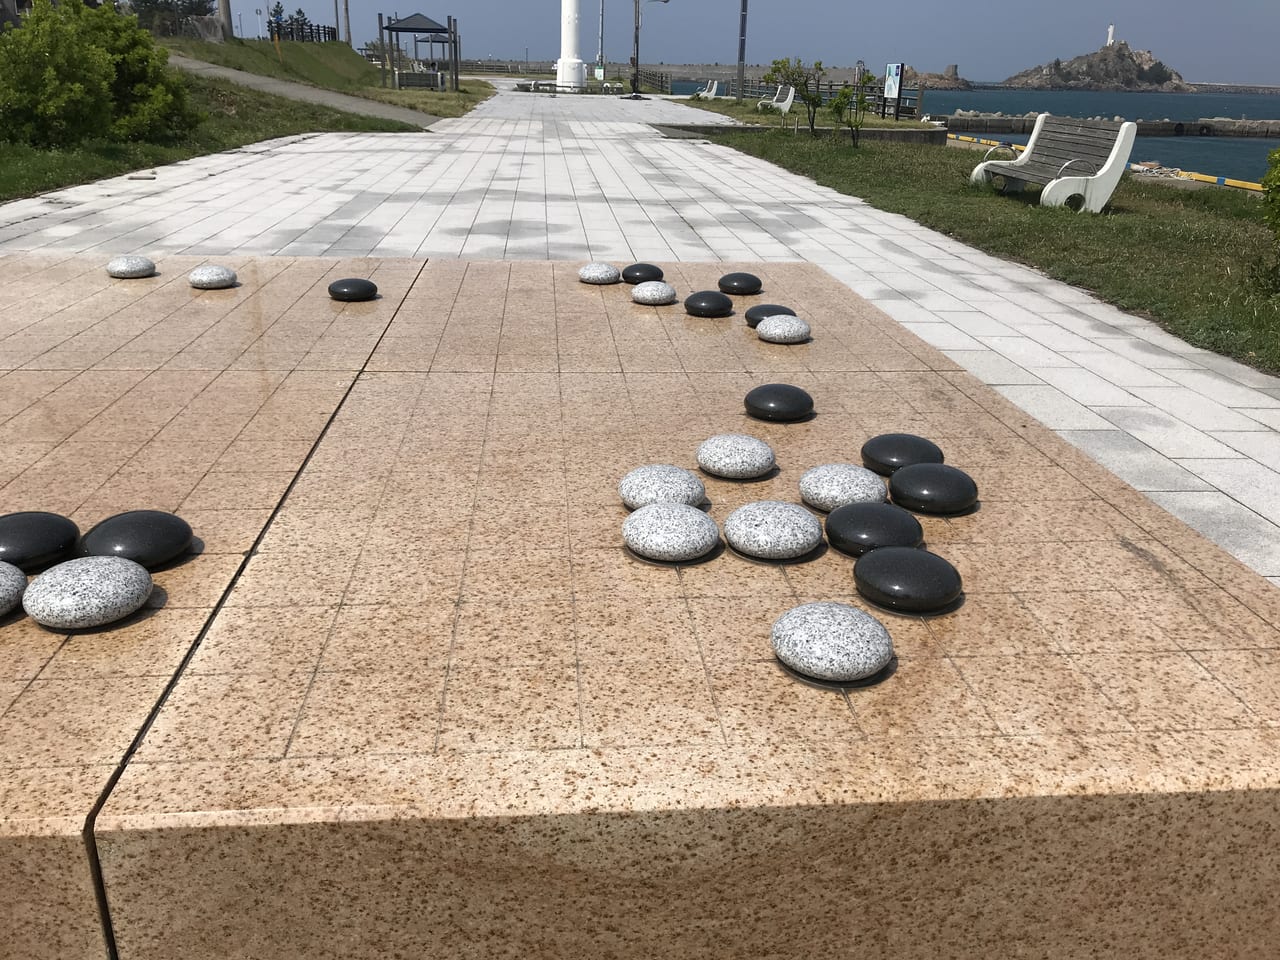 鳥取港のみなと公園にある大きな囲碁盤